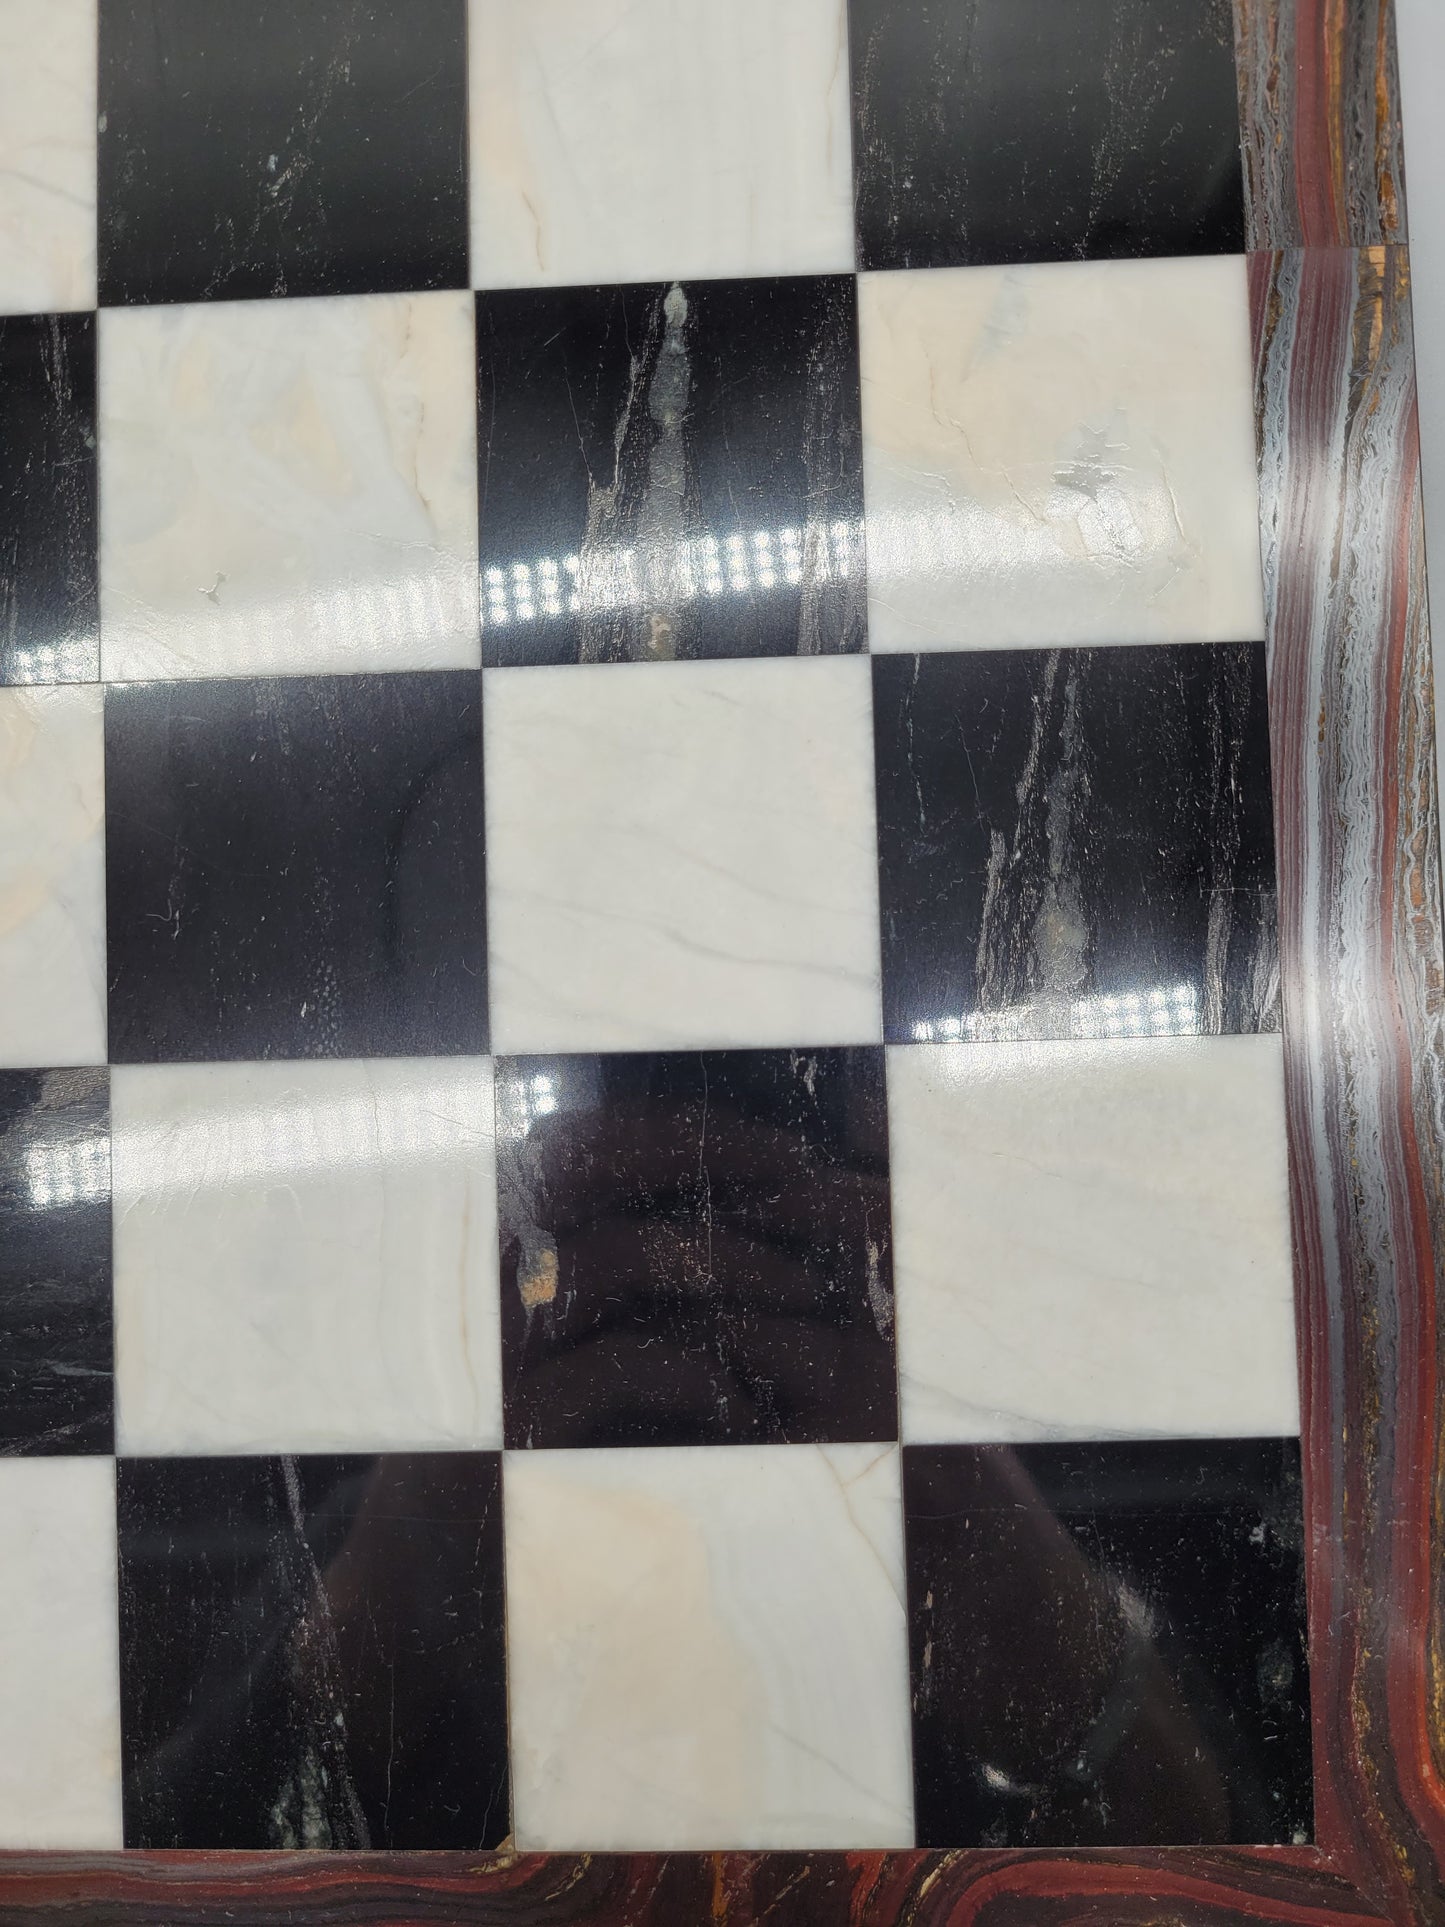 Einzigartiges Antikes Handgearbeitetes Schachbrett Schachspiel für Sammler